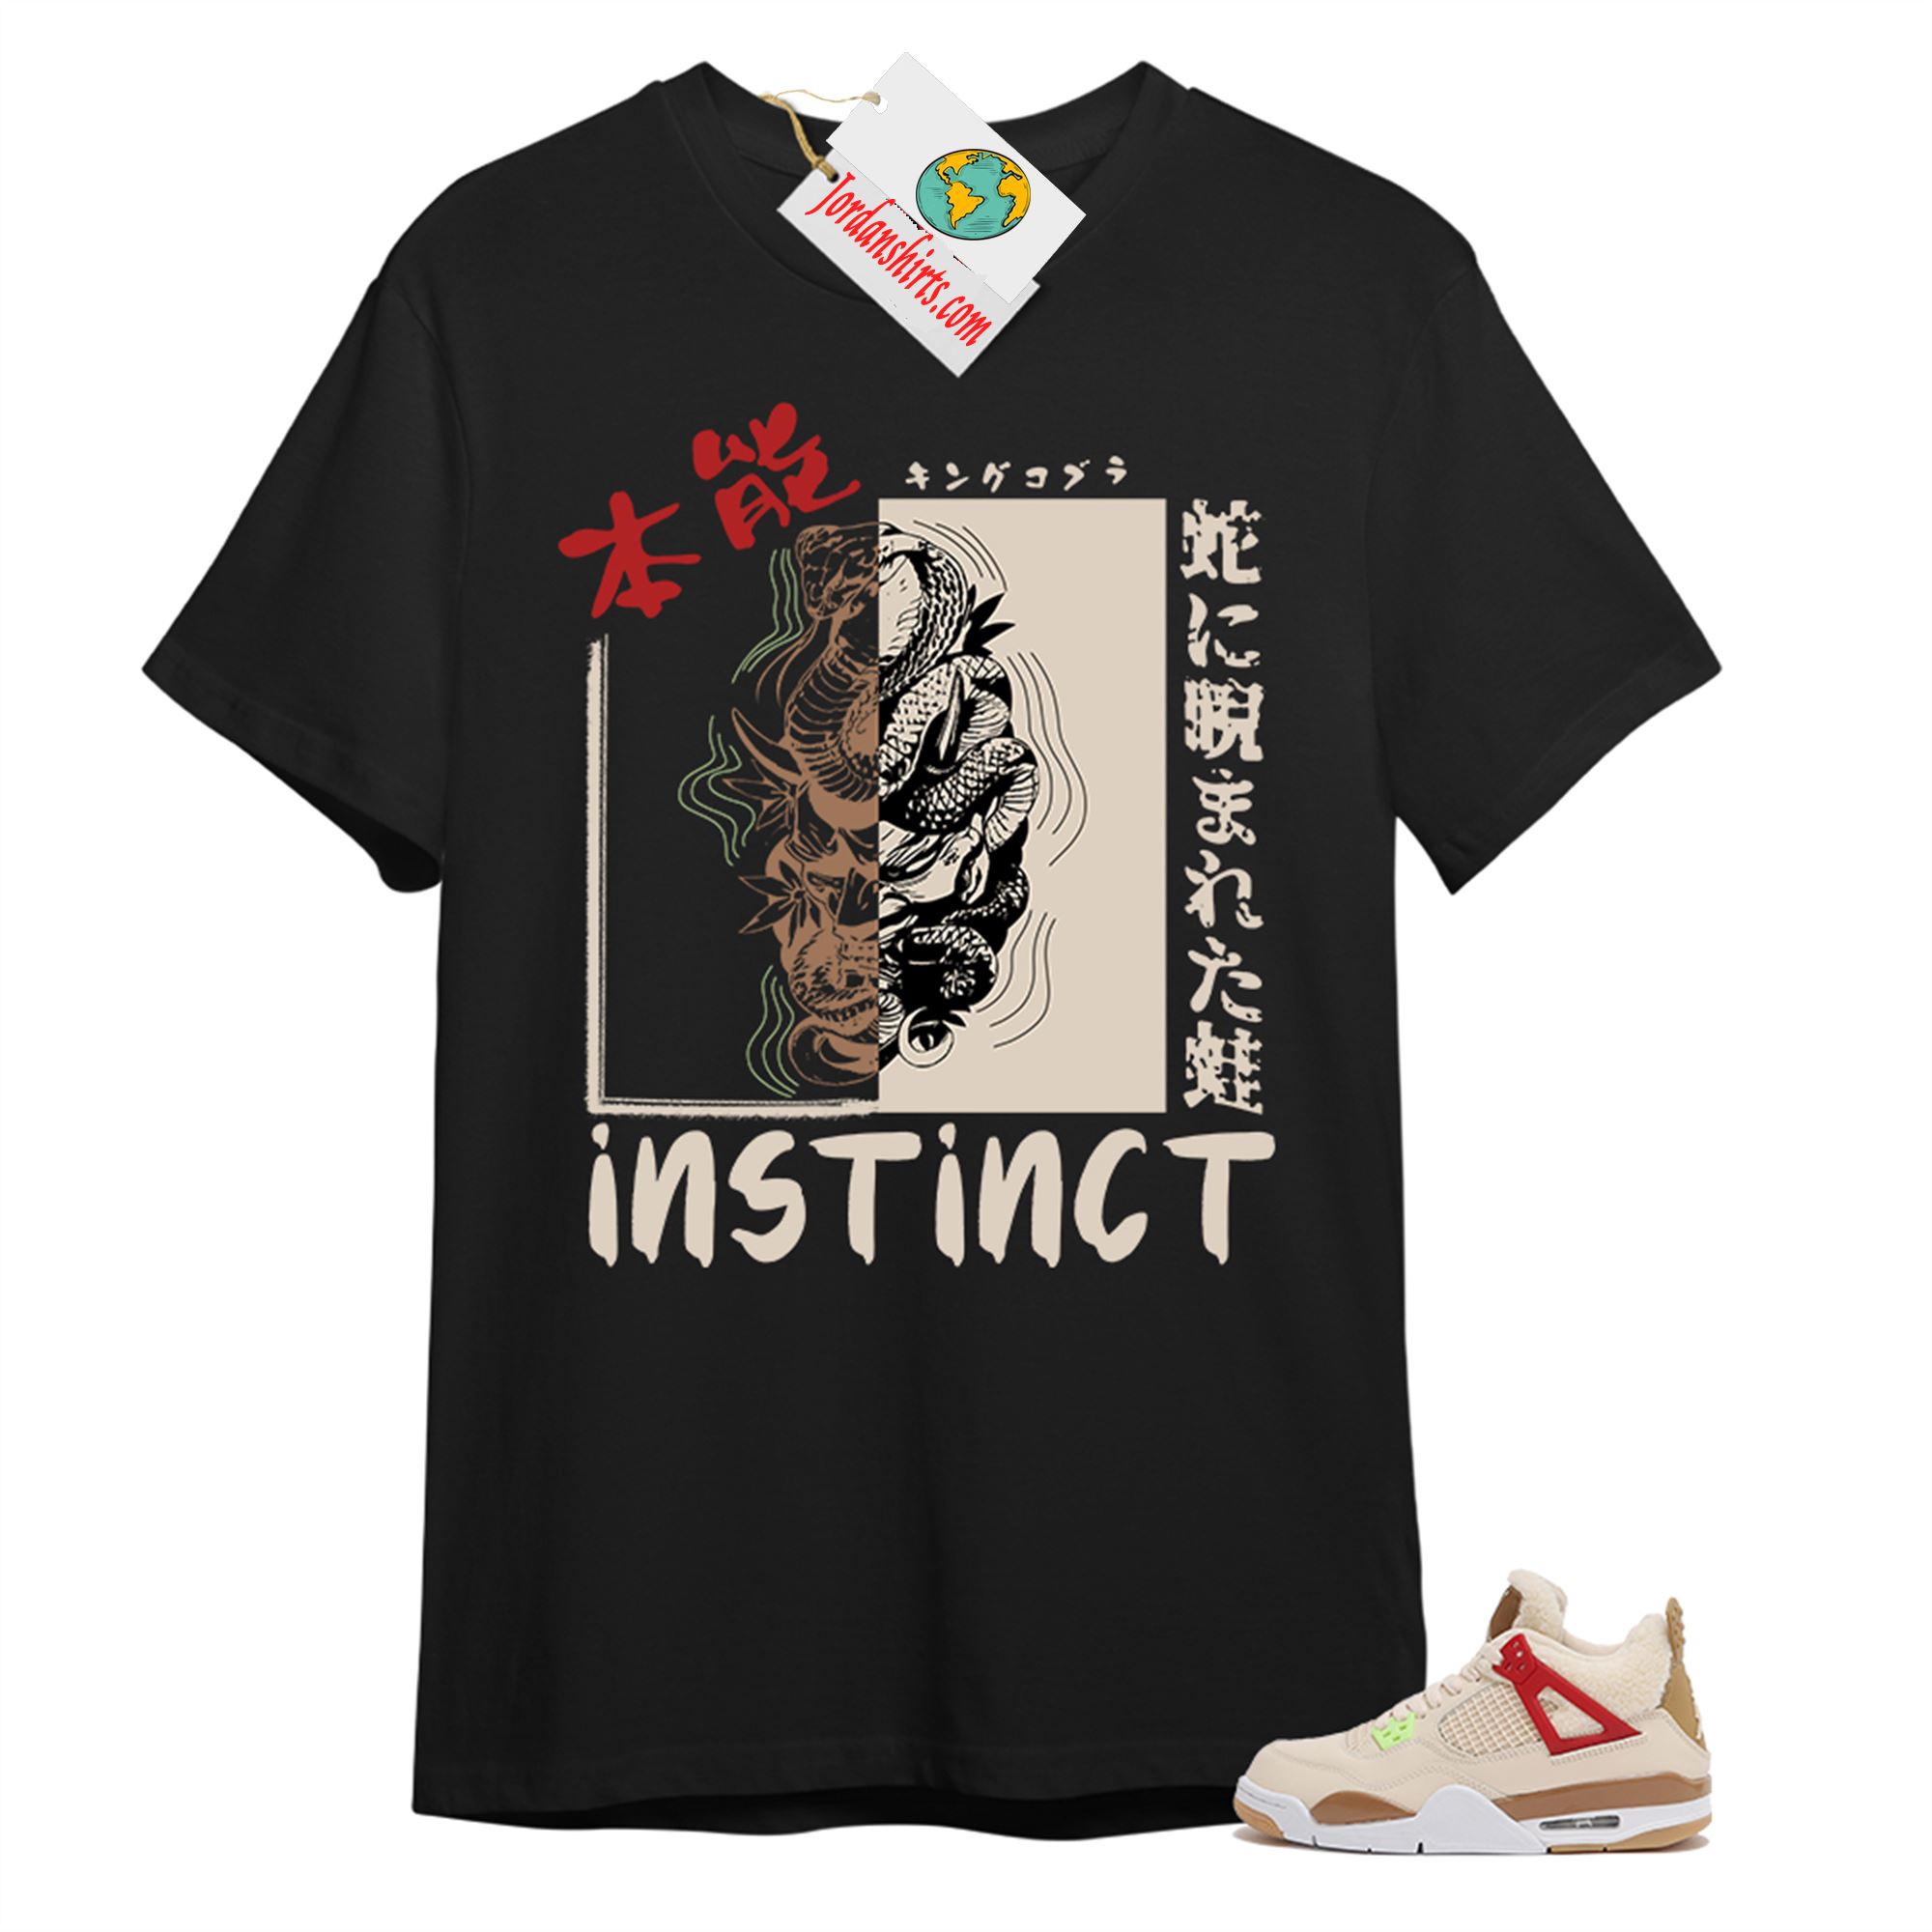 Jordan 4 Shirt, Instinct Fearless Snake Black T-shirt Air Jordan 4 Wild Things 4s Plus Size Up To 5xl